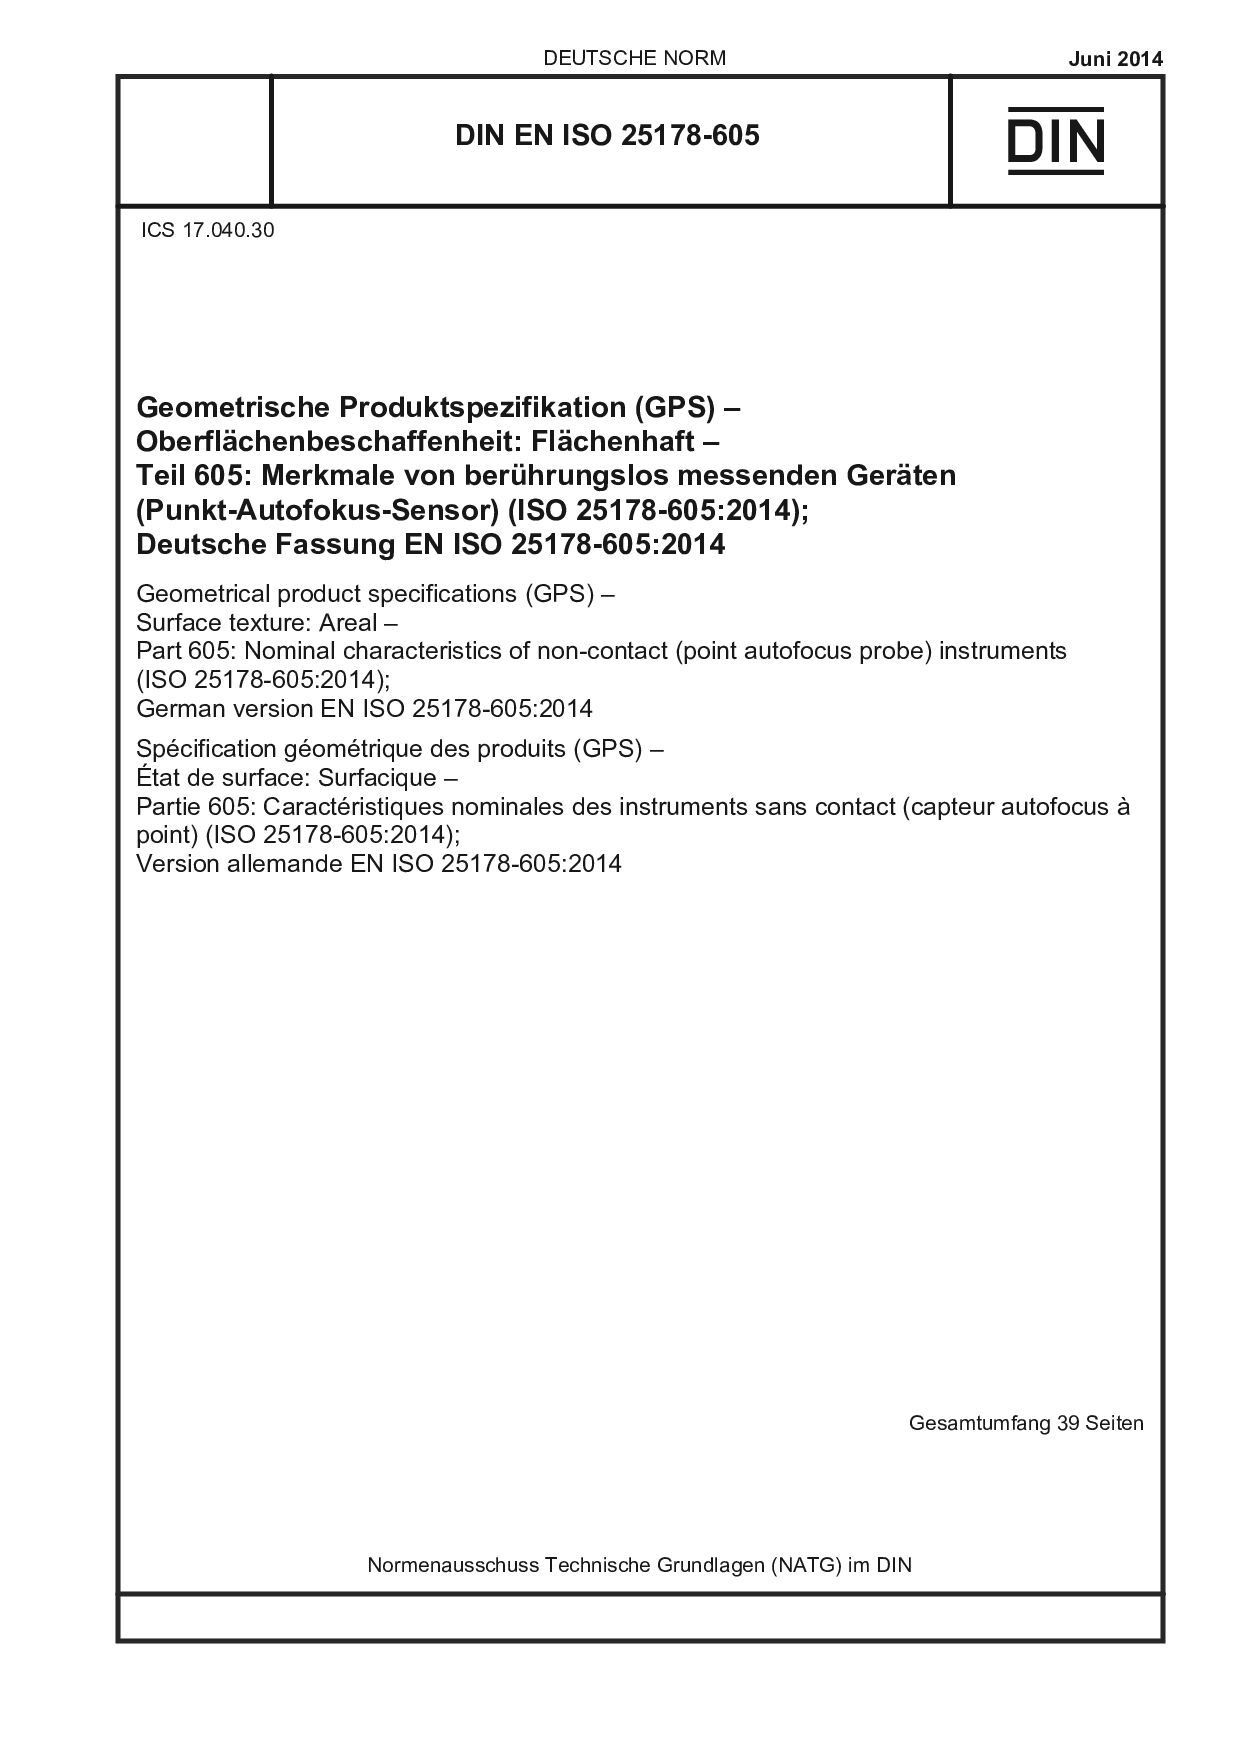 DIN EN ISO 25178-605:2014